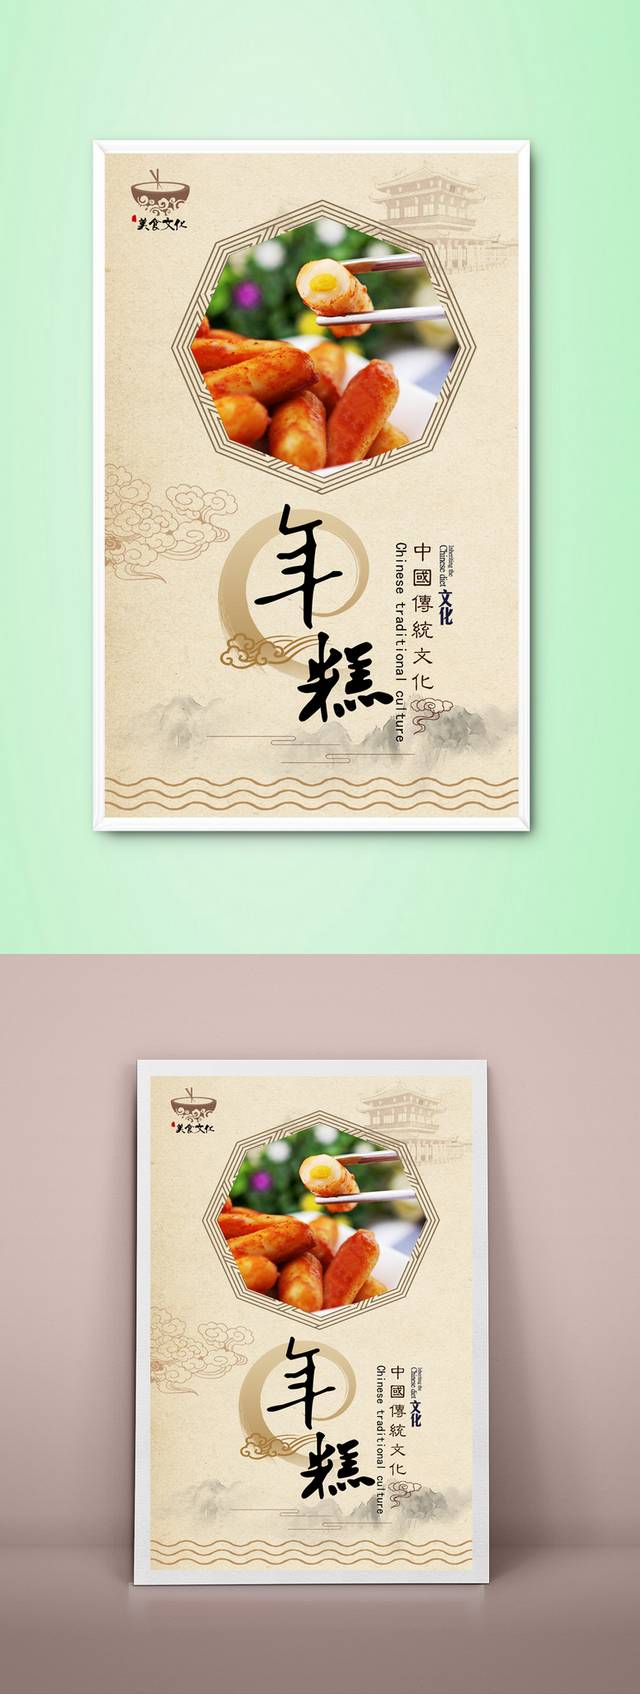 中国风高档年糕宣传海报设计